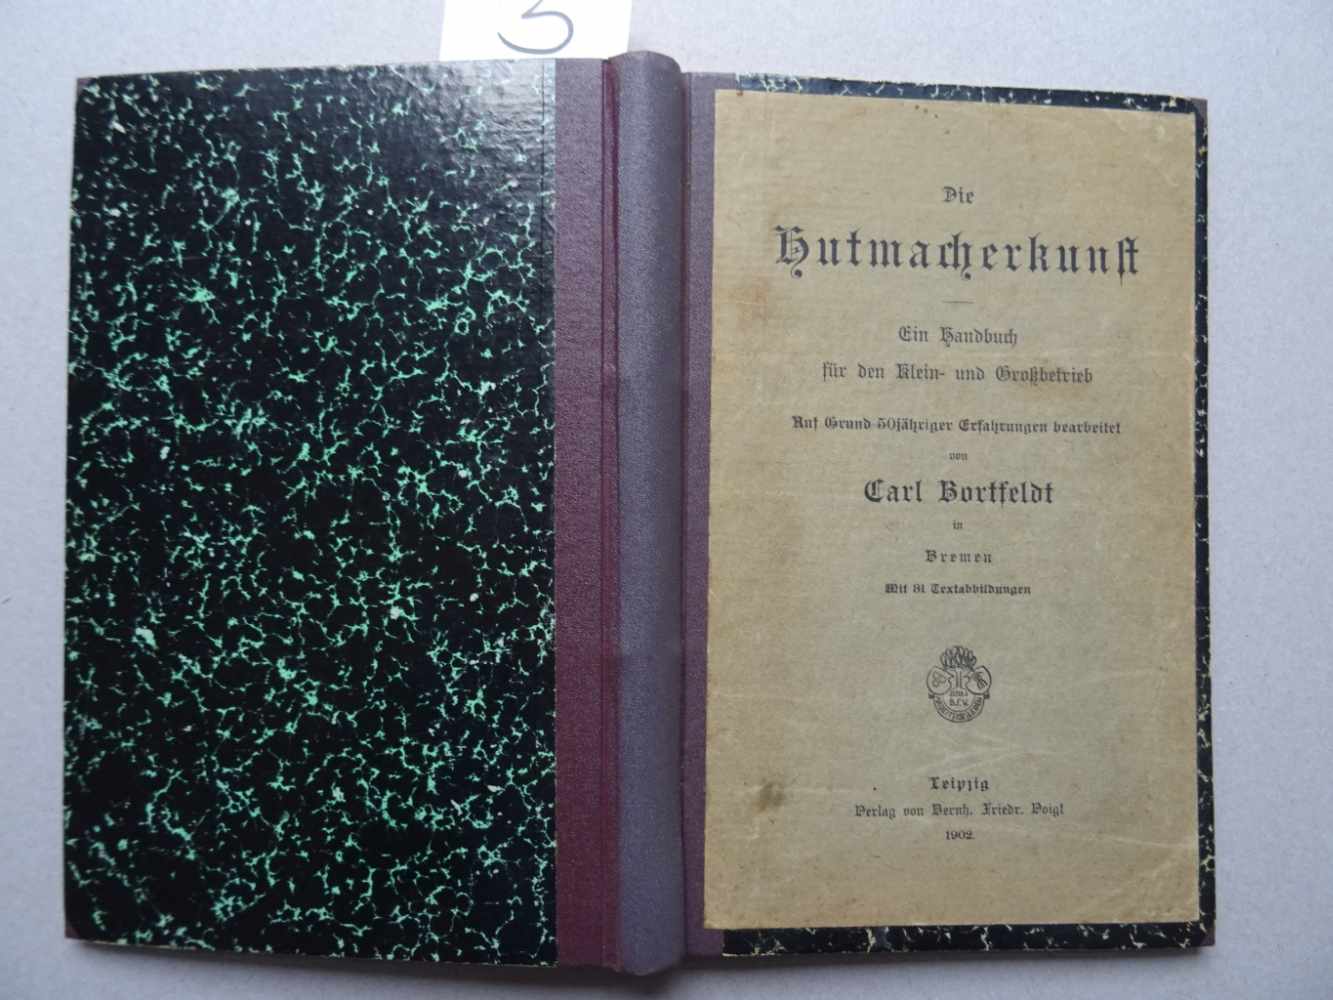 Bortfeldt, C.Die Hutmacherkunst. Ein Handbuch für den Klein- und Großbetrieb. Auf Grund 50jähriger